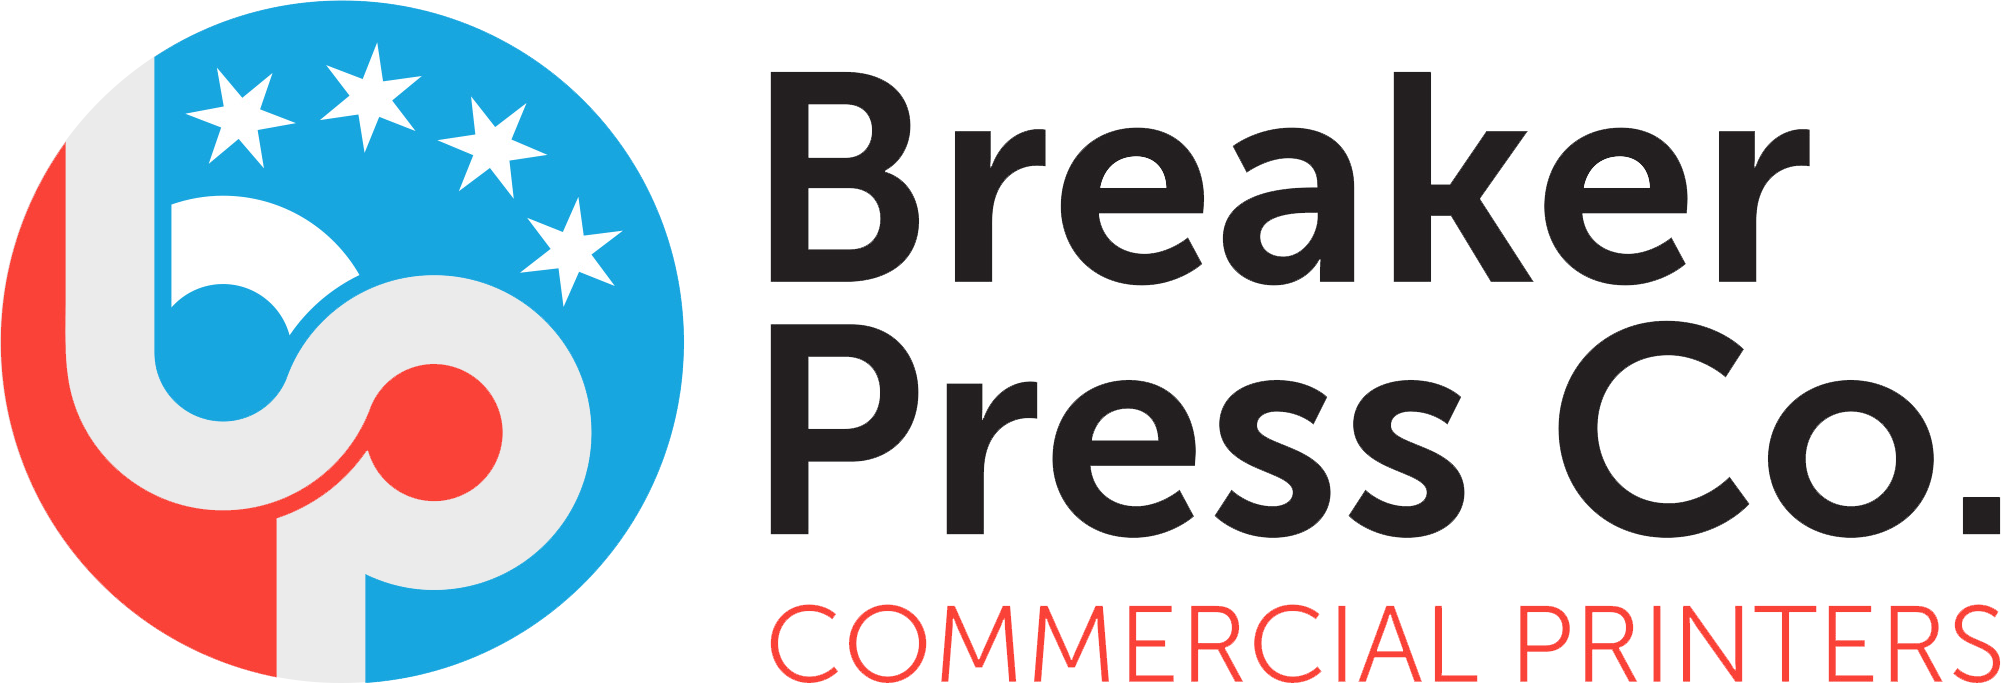 breaker press